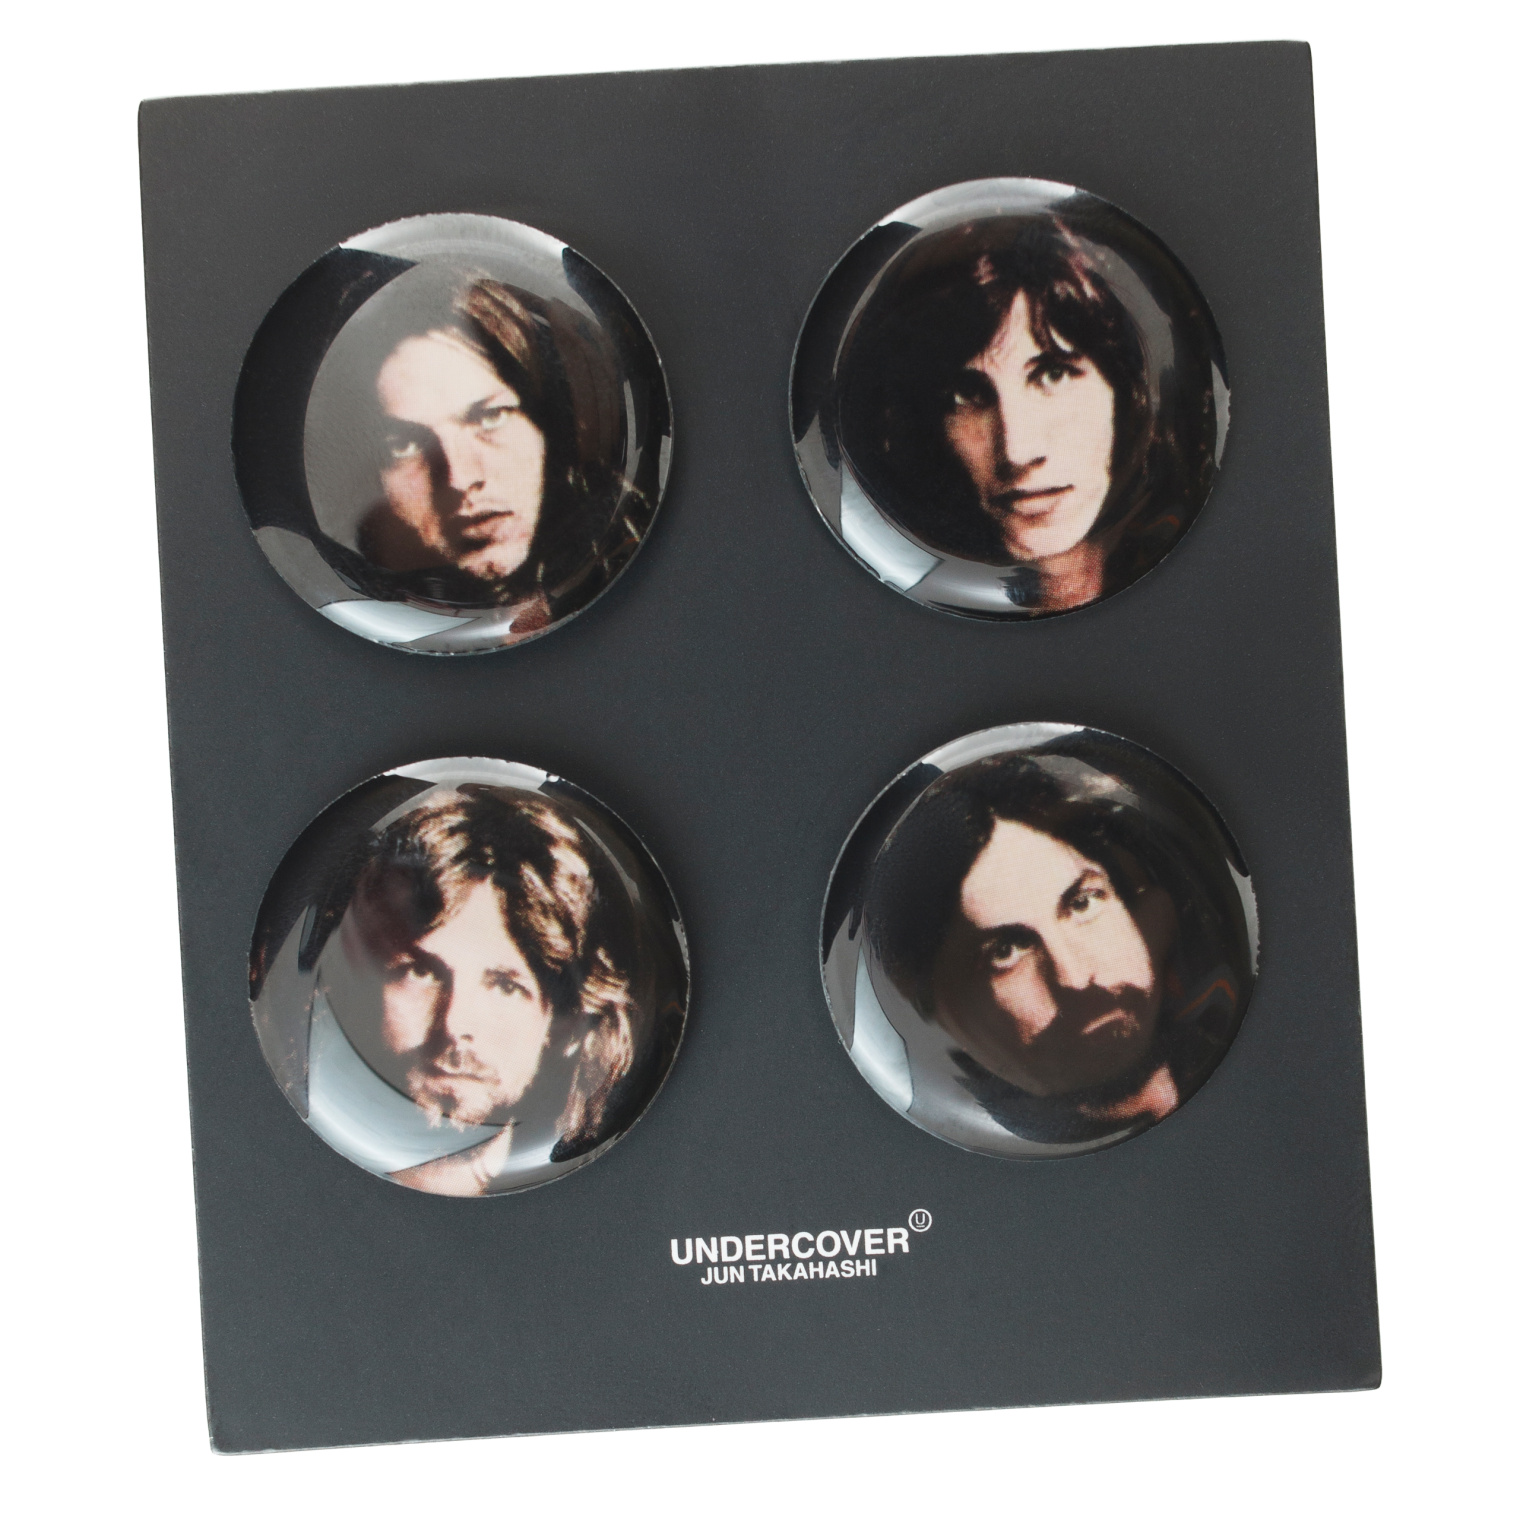 Undercover Комплект из 4 значков с участниками группы Pink Floyd